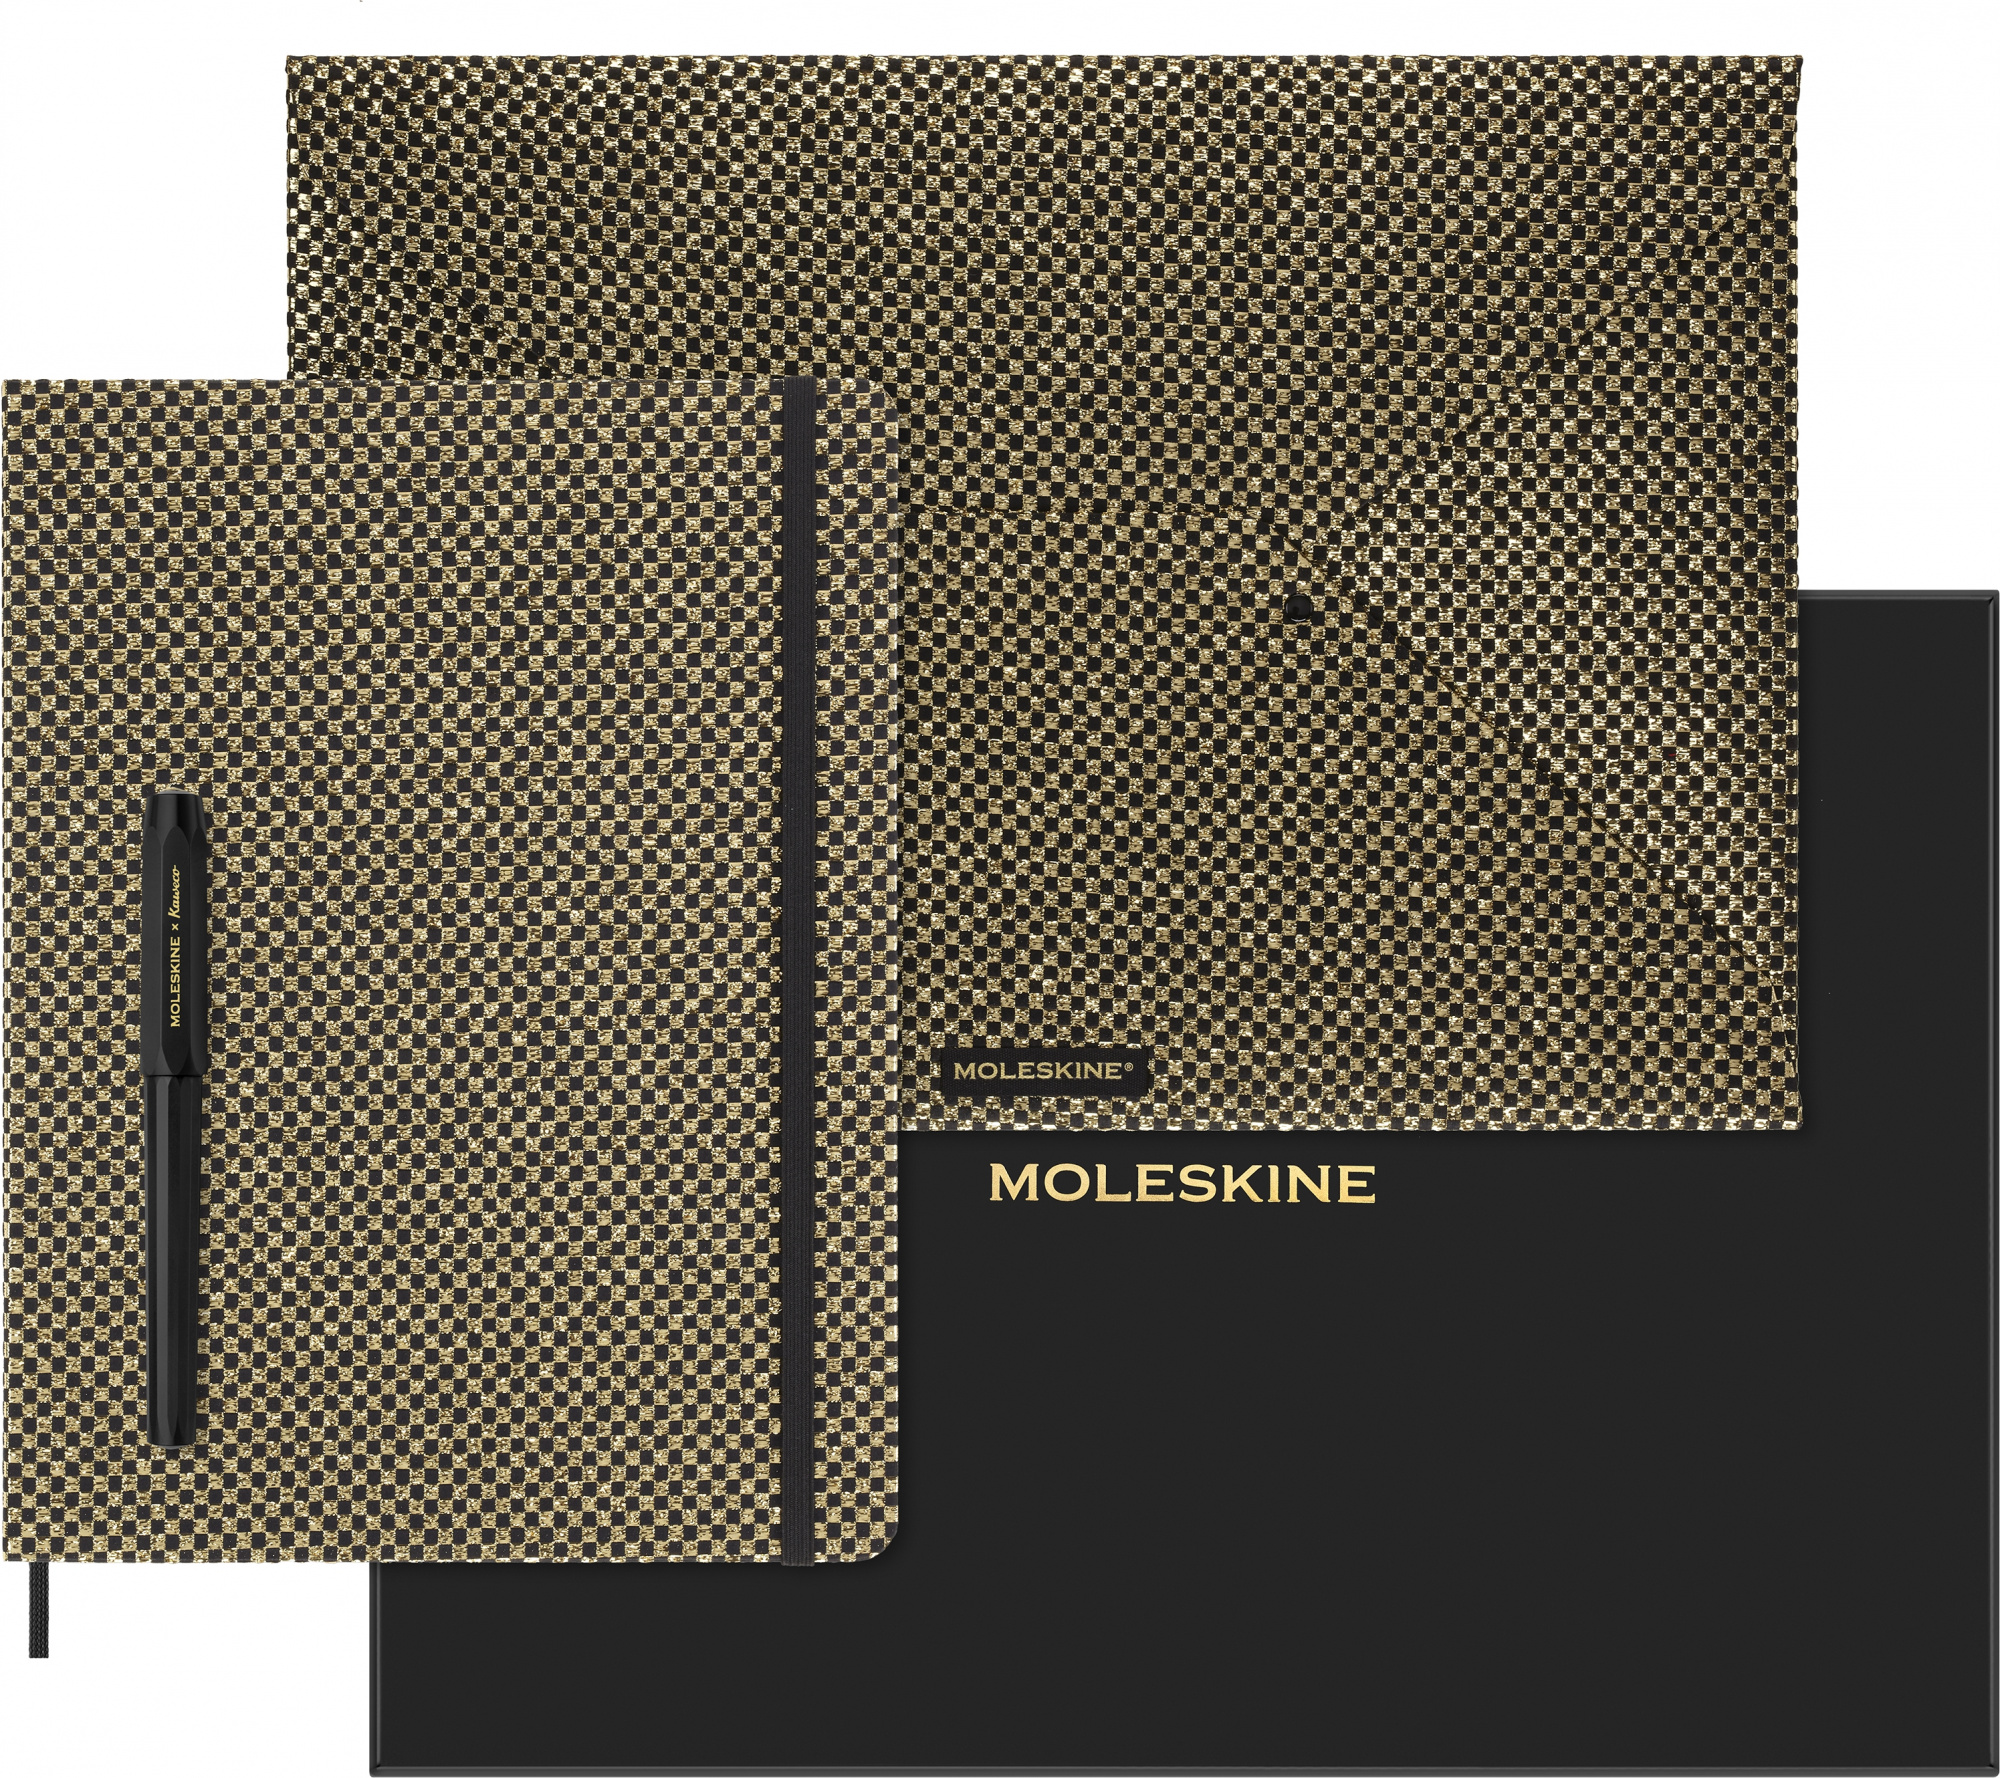 Набор Moleskine Limited Edition Prescious & Ethical Shine блокнот/ручка перьевая/папка-конверт XLarge линейка руч.:Kaweco золотистый